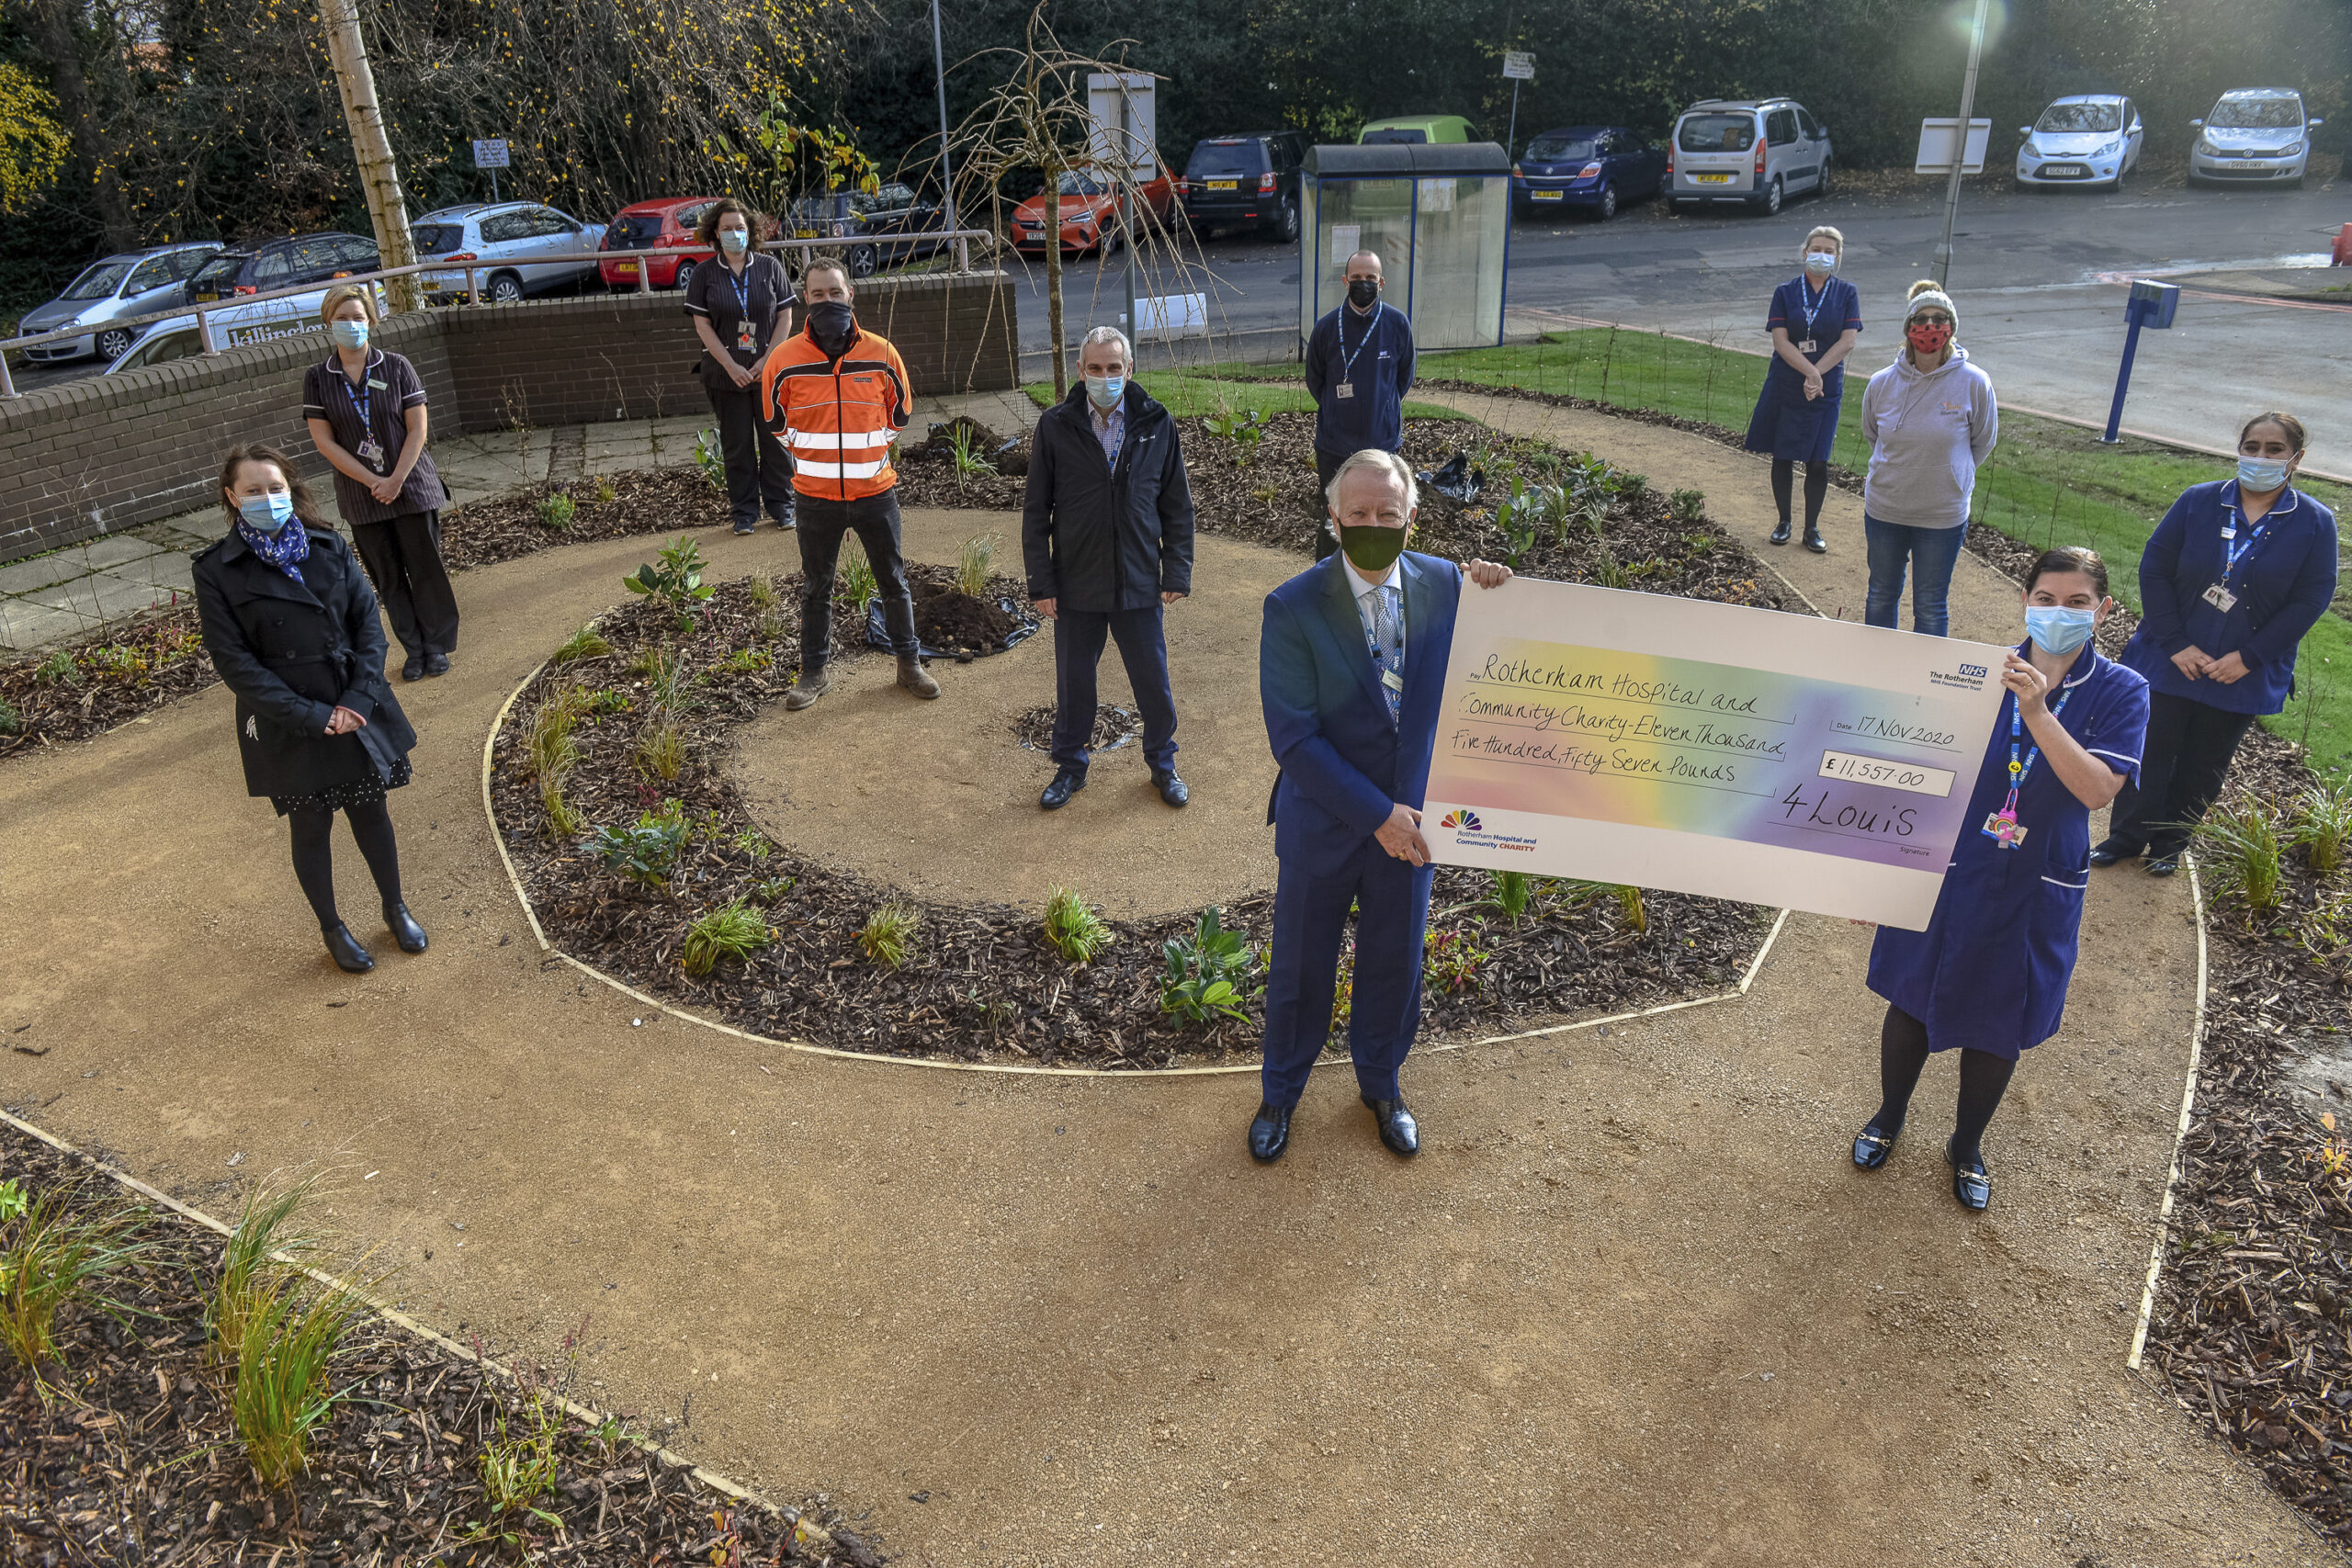 Virtual tributes sought for hospital memorial garden